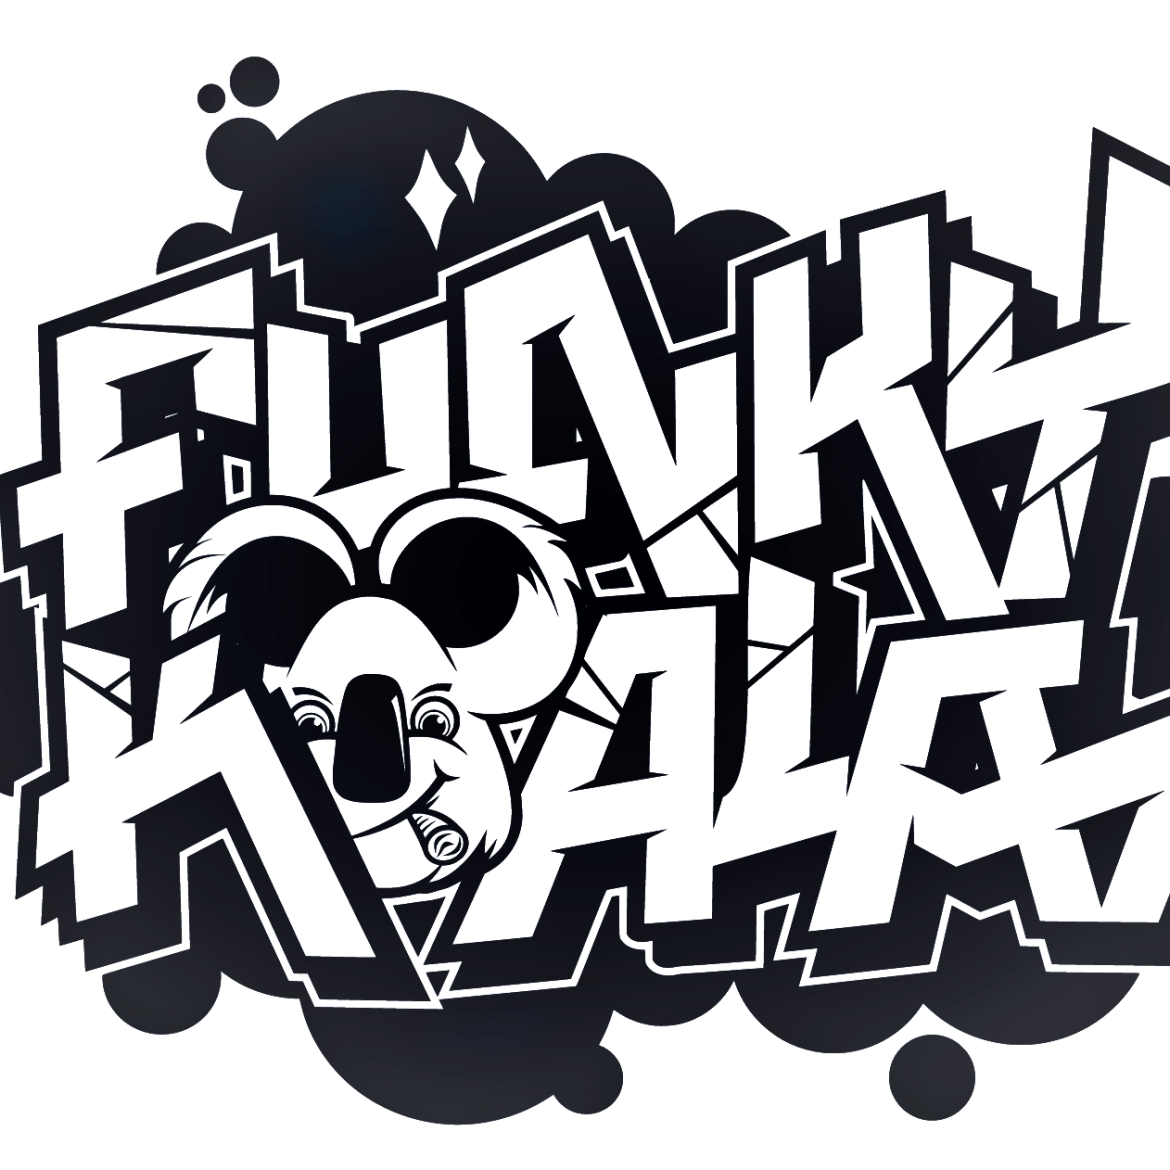 FunkyKoala